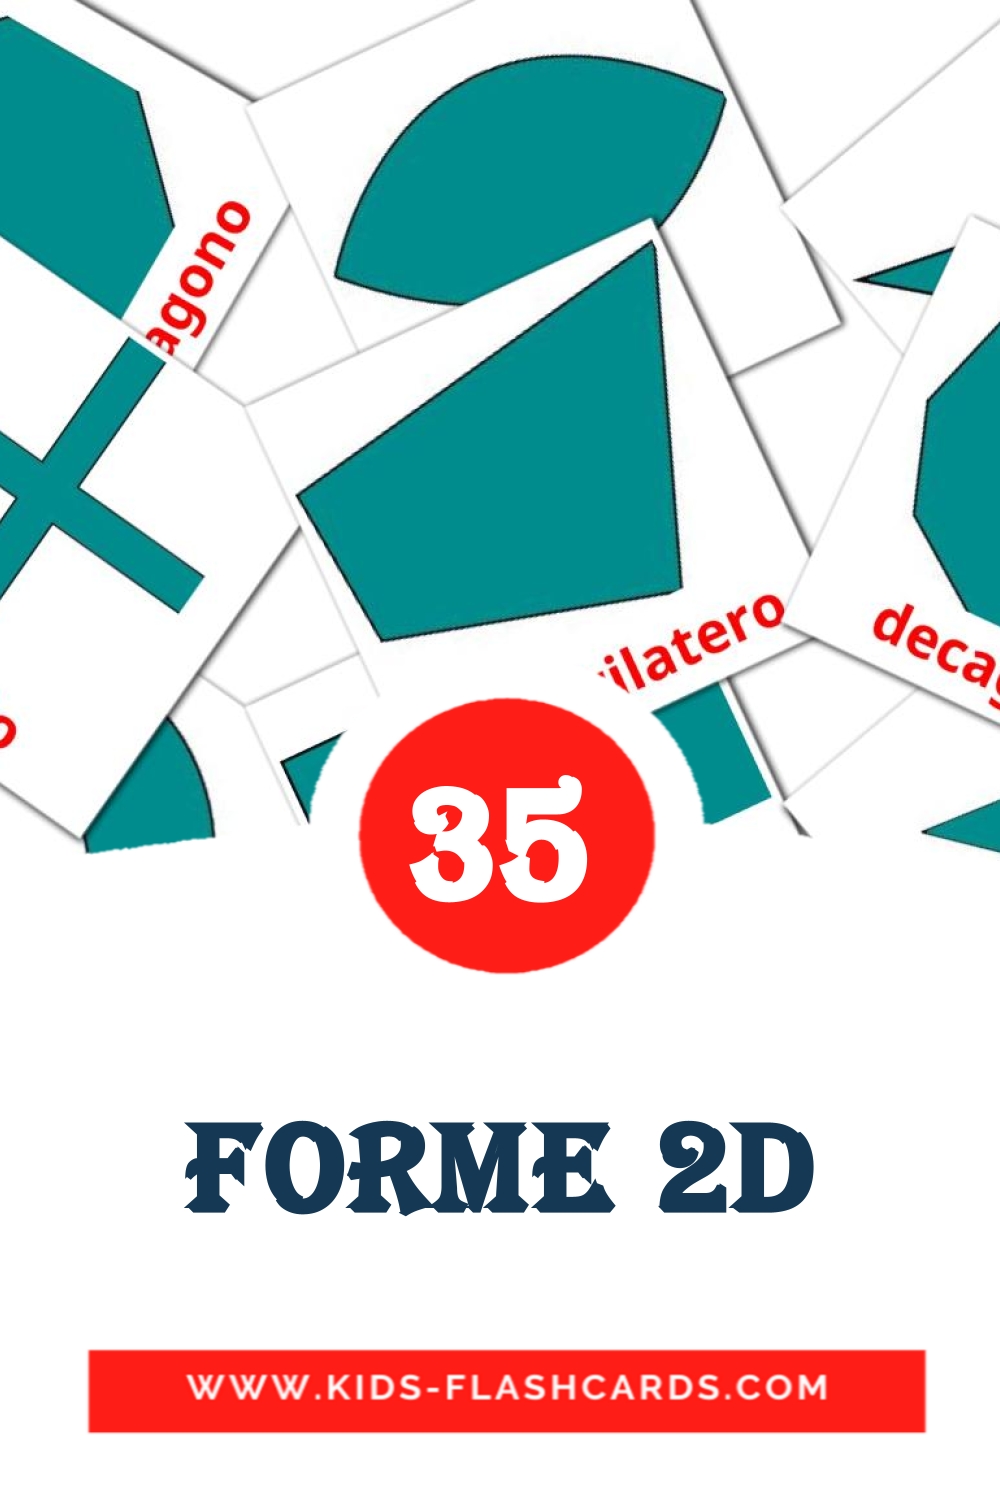 35 Forme 2D fotokaarten voor kleuters in het italiaanse